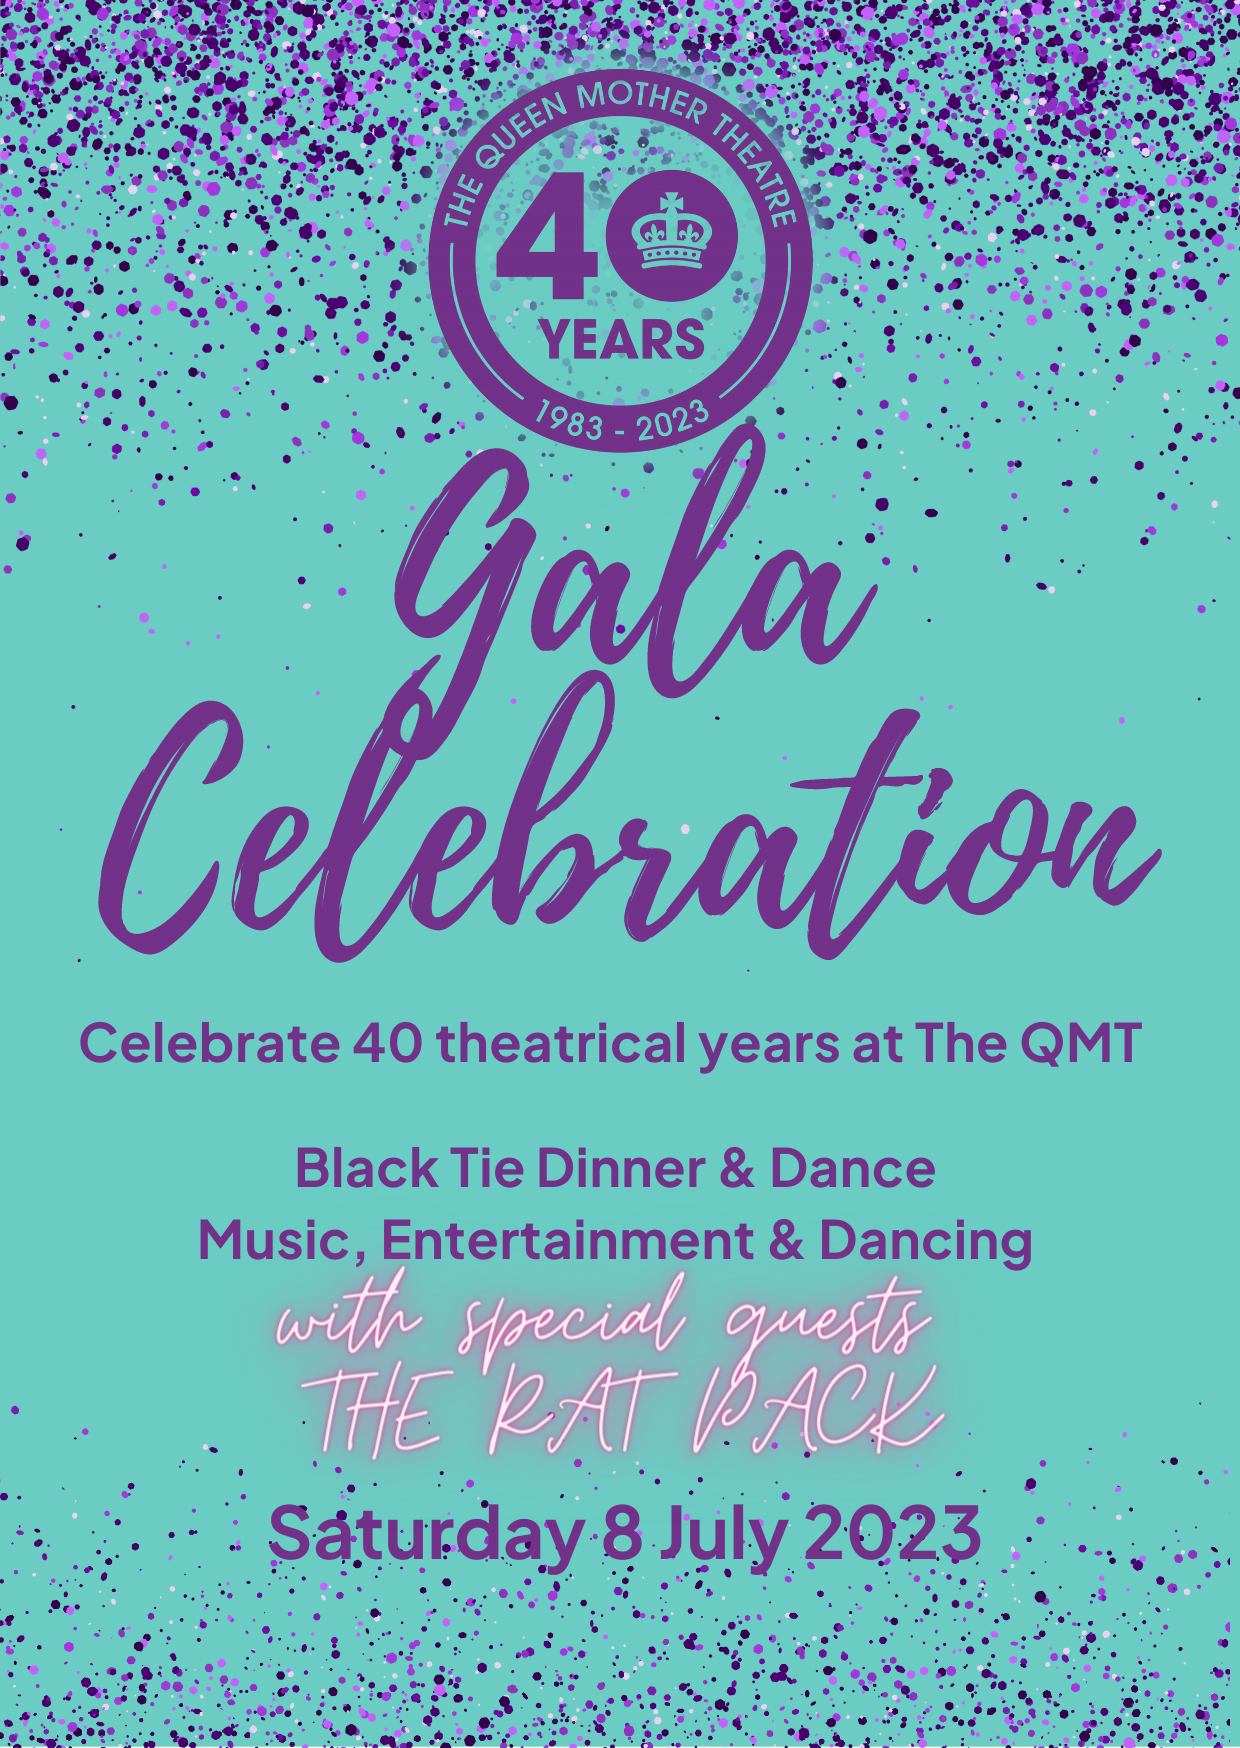 40 Year Gala Celebration Poster Image